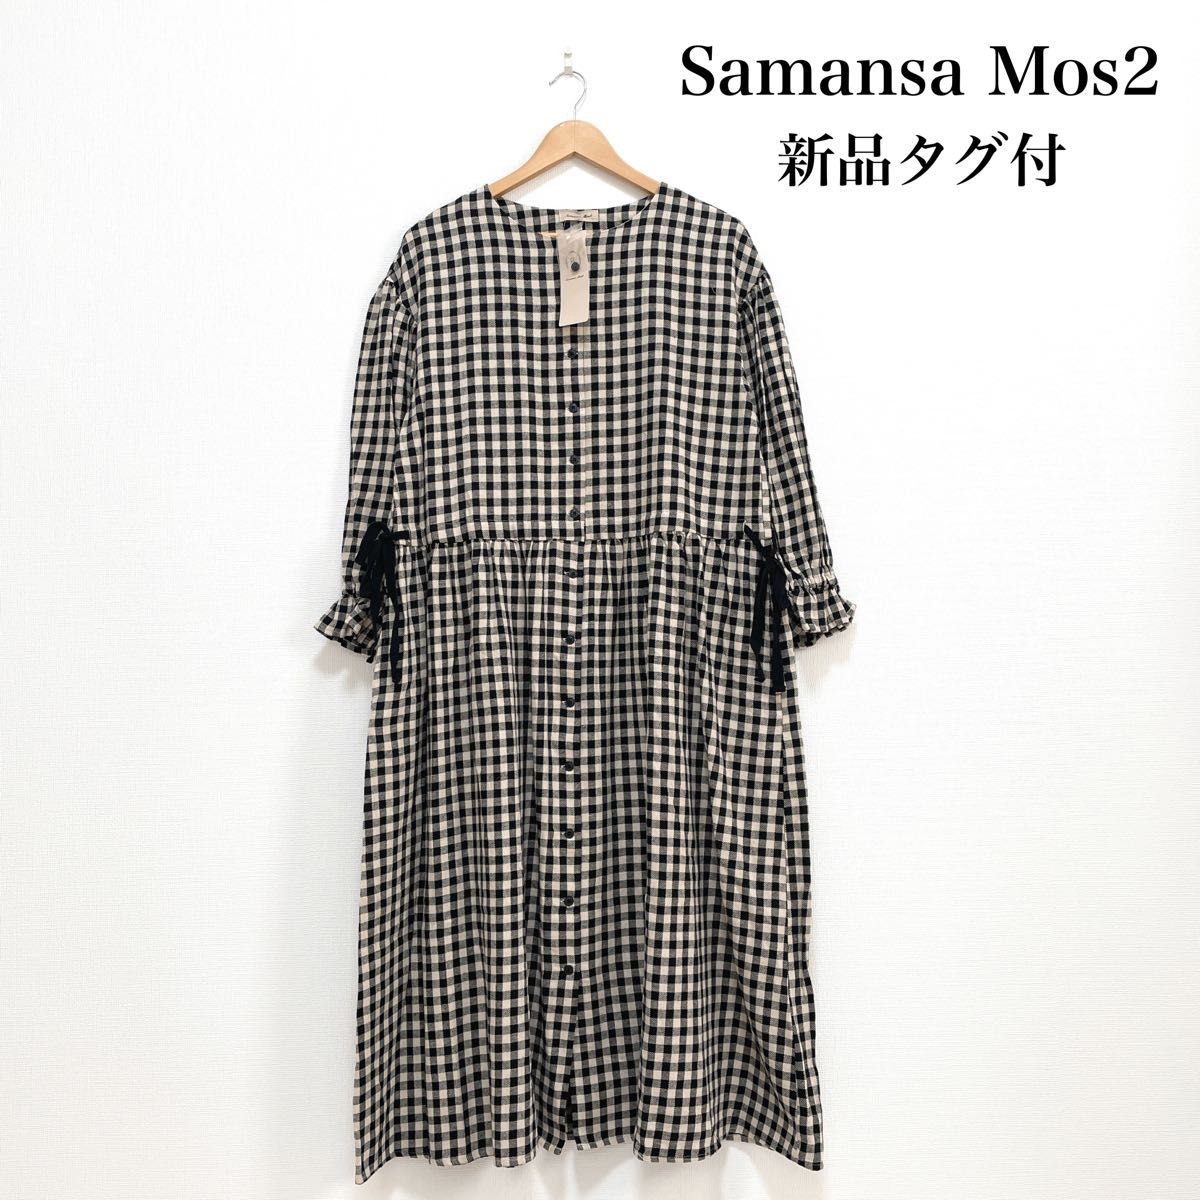 【新品タグ付】Samansa Mos2 サマンサモスモス 綿麻ロングワンピース 黒 ゆったり ナチュラル